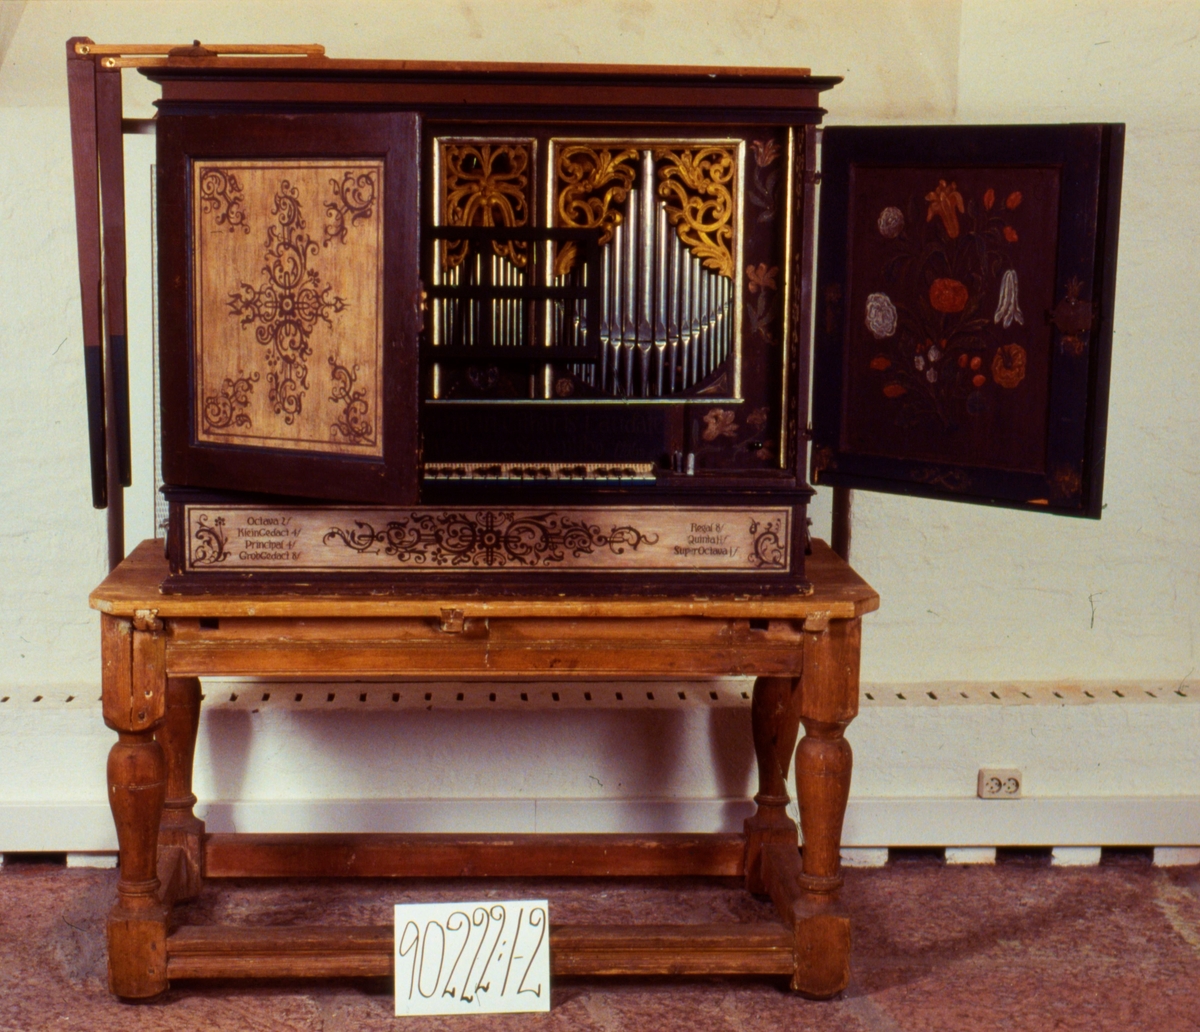 1) Bärbar orgel med fyra bärhandtag av järn, två på vardera sidan.
Orgeln är inbyggd i ett vacket målat skåp med två luckor på framsidan. Brun sirlig blomdekor på ljusbotten.
2) Bord av trä, klumpigt, ej ursprungligt.
Engelskt instrument troligen tillverkat vid mitten av 1600-talet av Nicolaus Manderscheidt i Nürnberg.
Orgeln skänktes ursprungligen av Per Brahe till Visingsös kyrka och hamnade sedan i Bjurums kyrka. 
Renoverad av Mats Kjersgaard på 1970-talet.
Se särskild kapsel om Bjurumsorgeln i arkiv